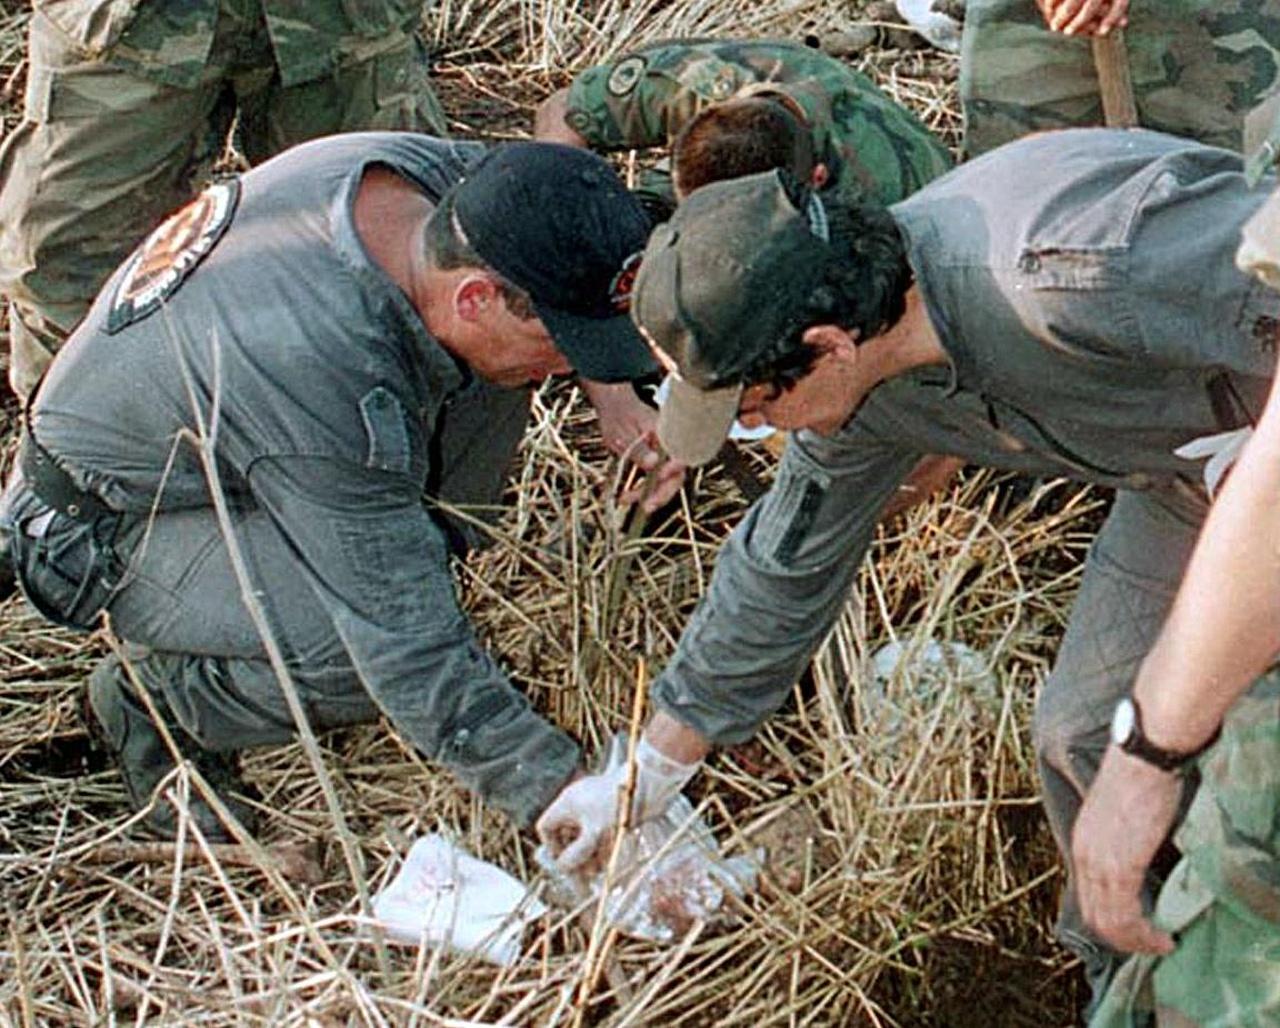 Membros da Fiscalia recolhem um dos esqueletos de algumas das cento e quarenta crianças assassinadas por Luis Alfredo Garavito em outubro de 1998, em Pereira 320 Kms. a oeste de Bogotá, Colômbia.